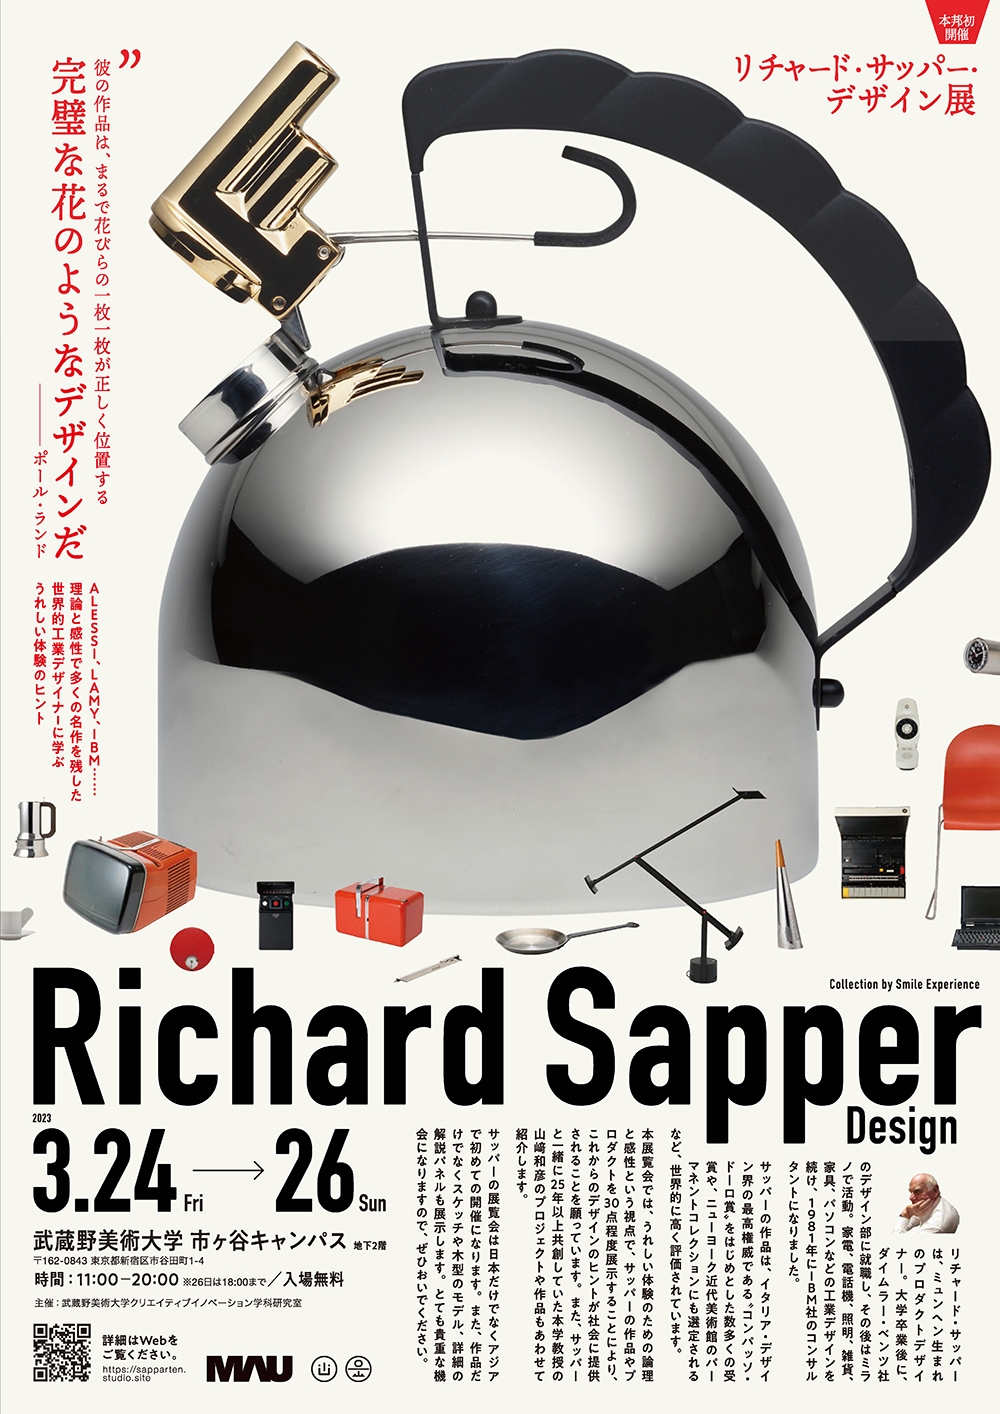 リチャード・サッパー・デザイン展 うれしい体験のための論理と感性のデザイン